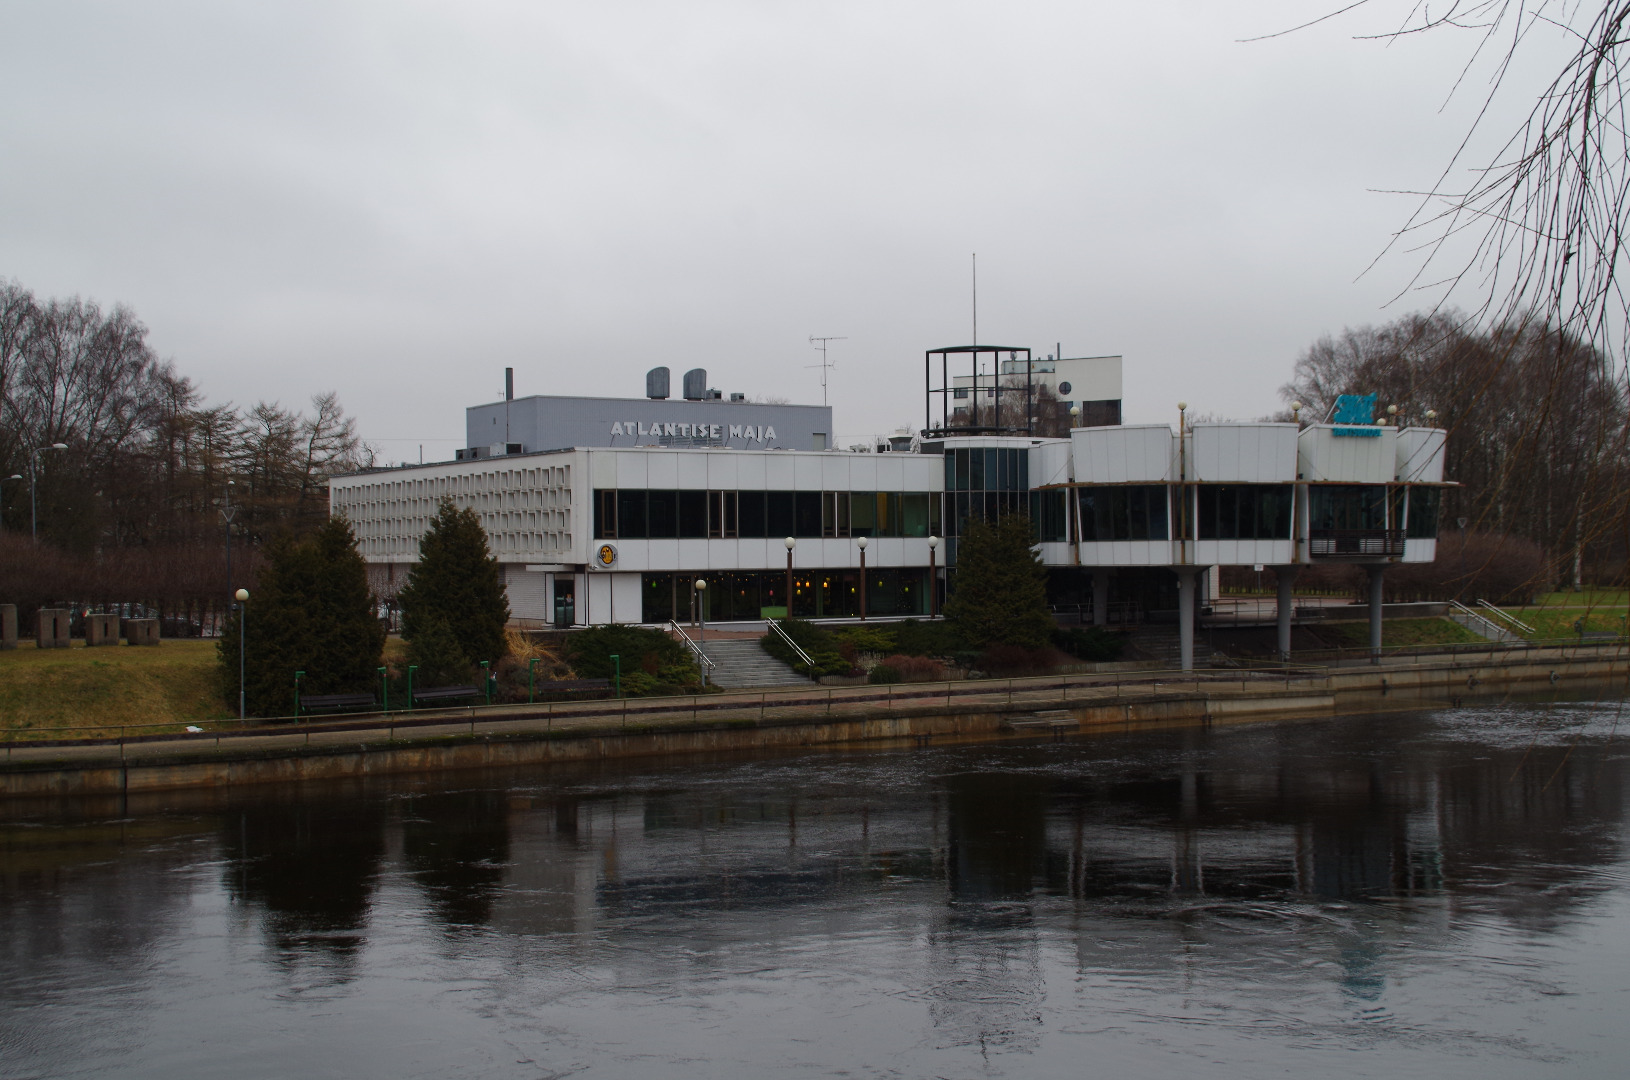 Restoran "Kaunas" Tartus, vaade hoonele üle jõe. Arhitekt Voldemar Herkel rephoto